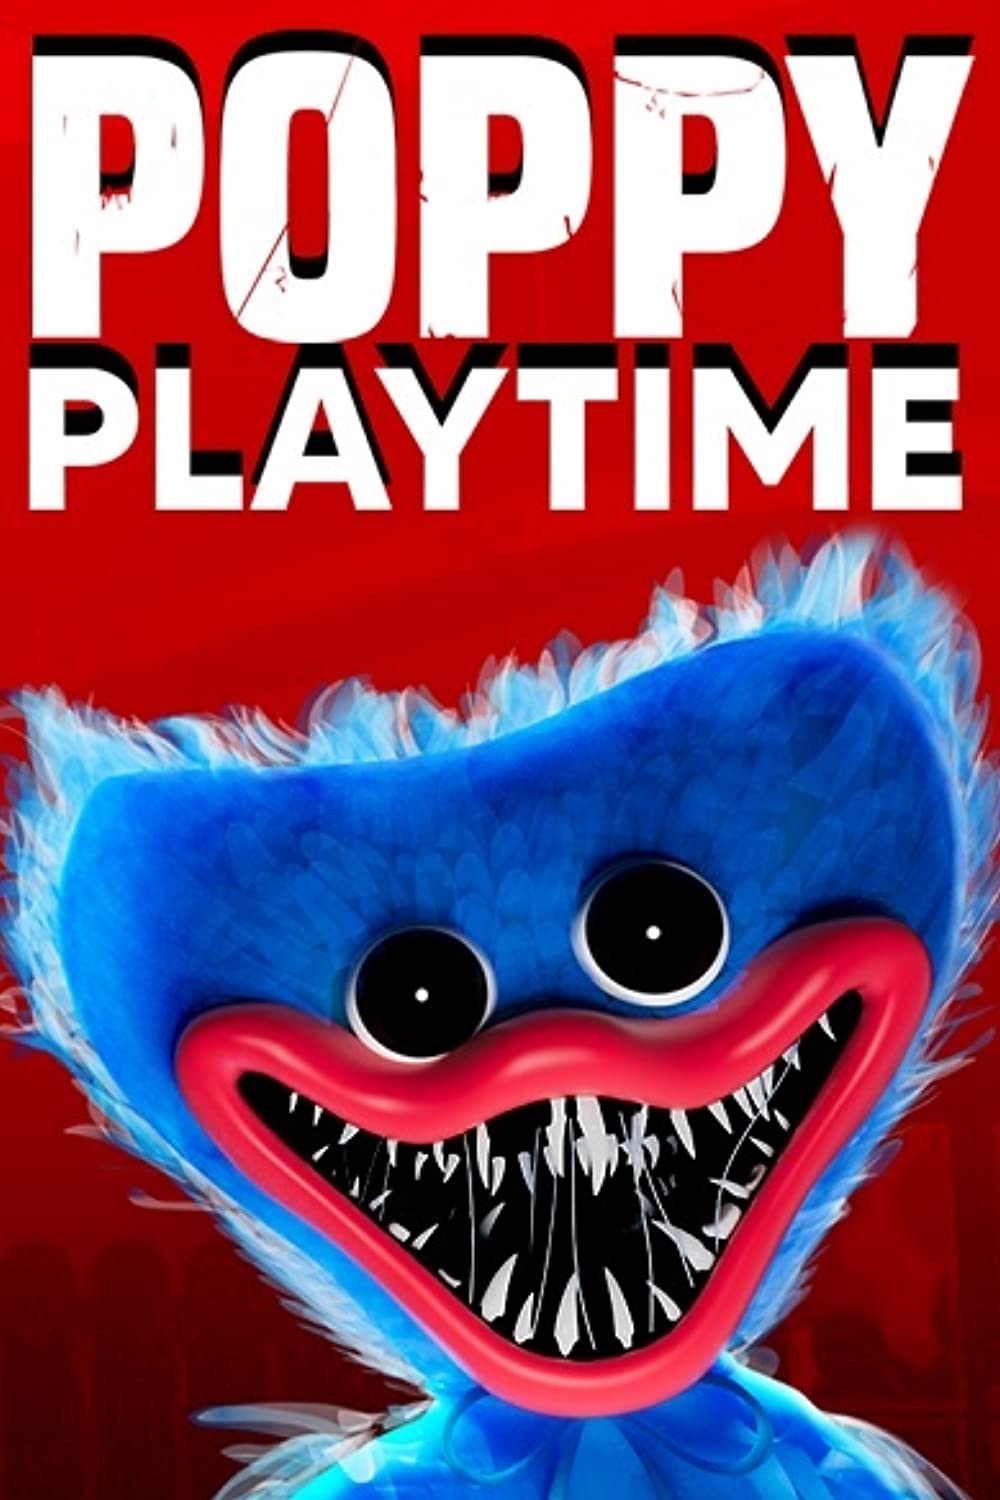 Poppy Playtime logo